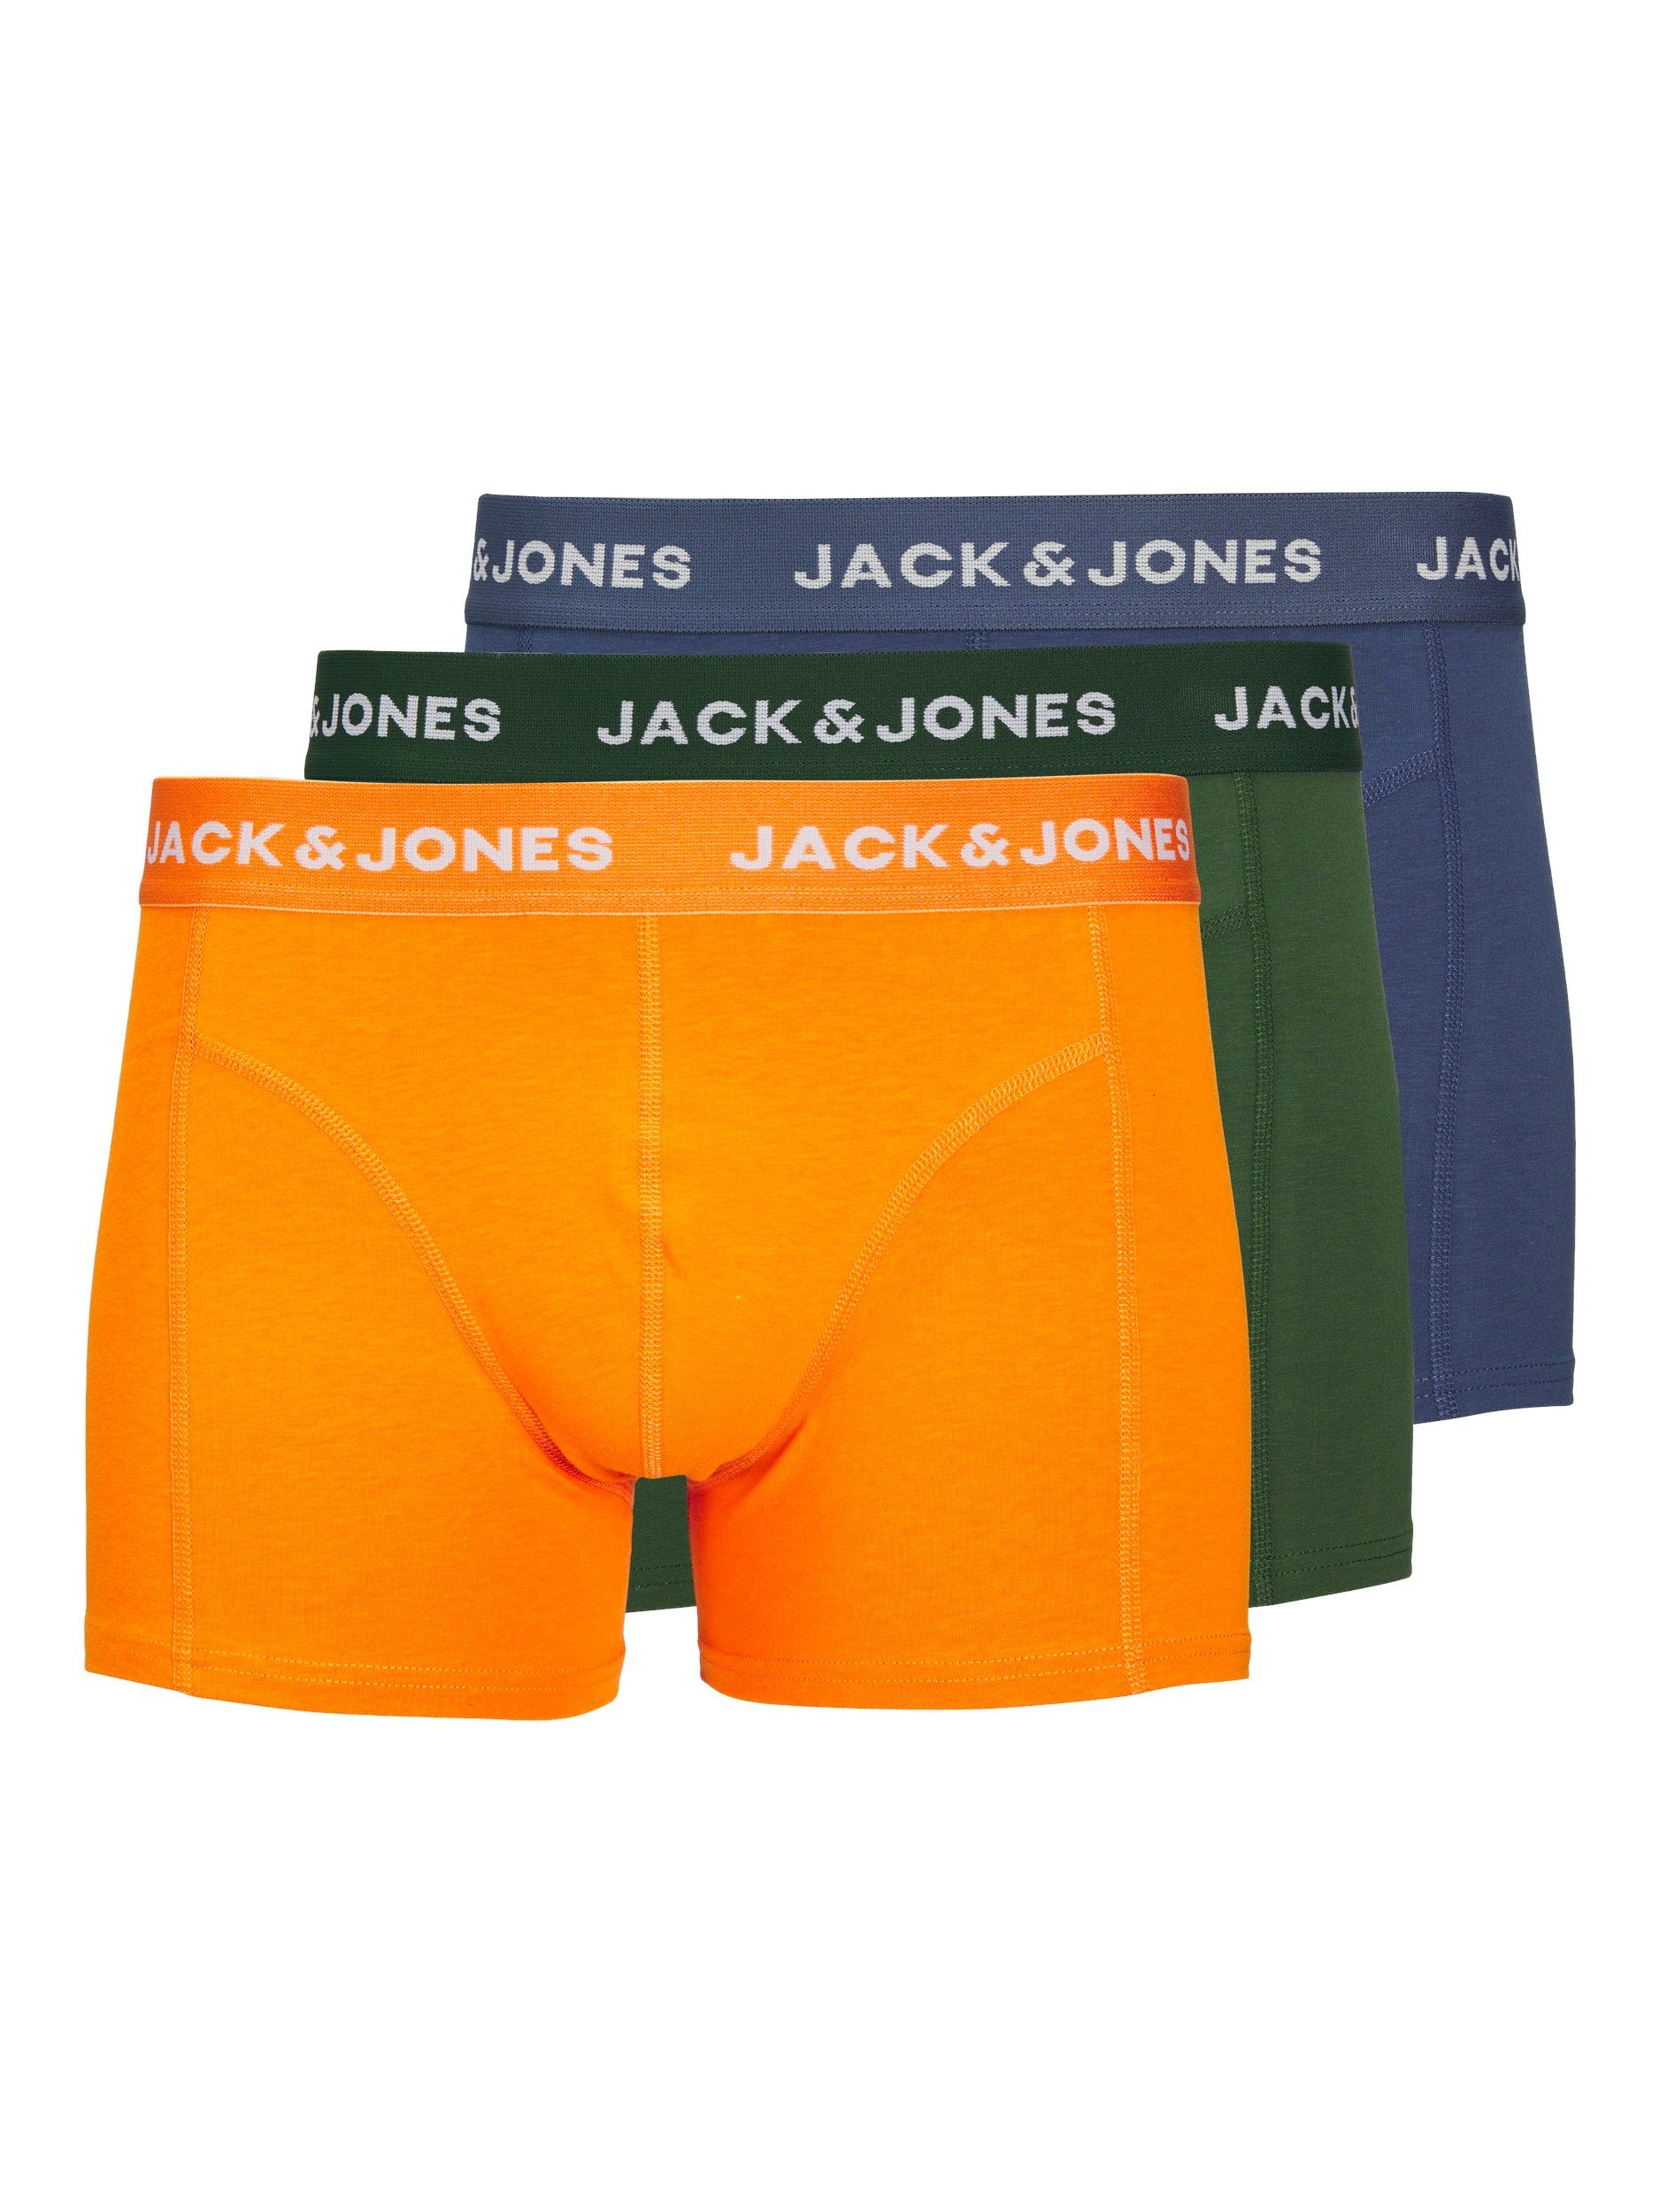 3 TRUNKS Jack & Trunk NOOS Jones PACK JACKEX 3-St) (Packung,